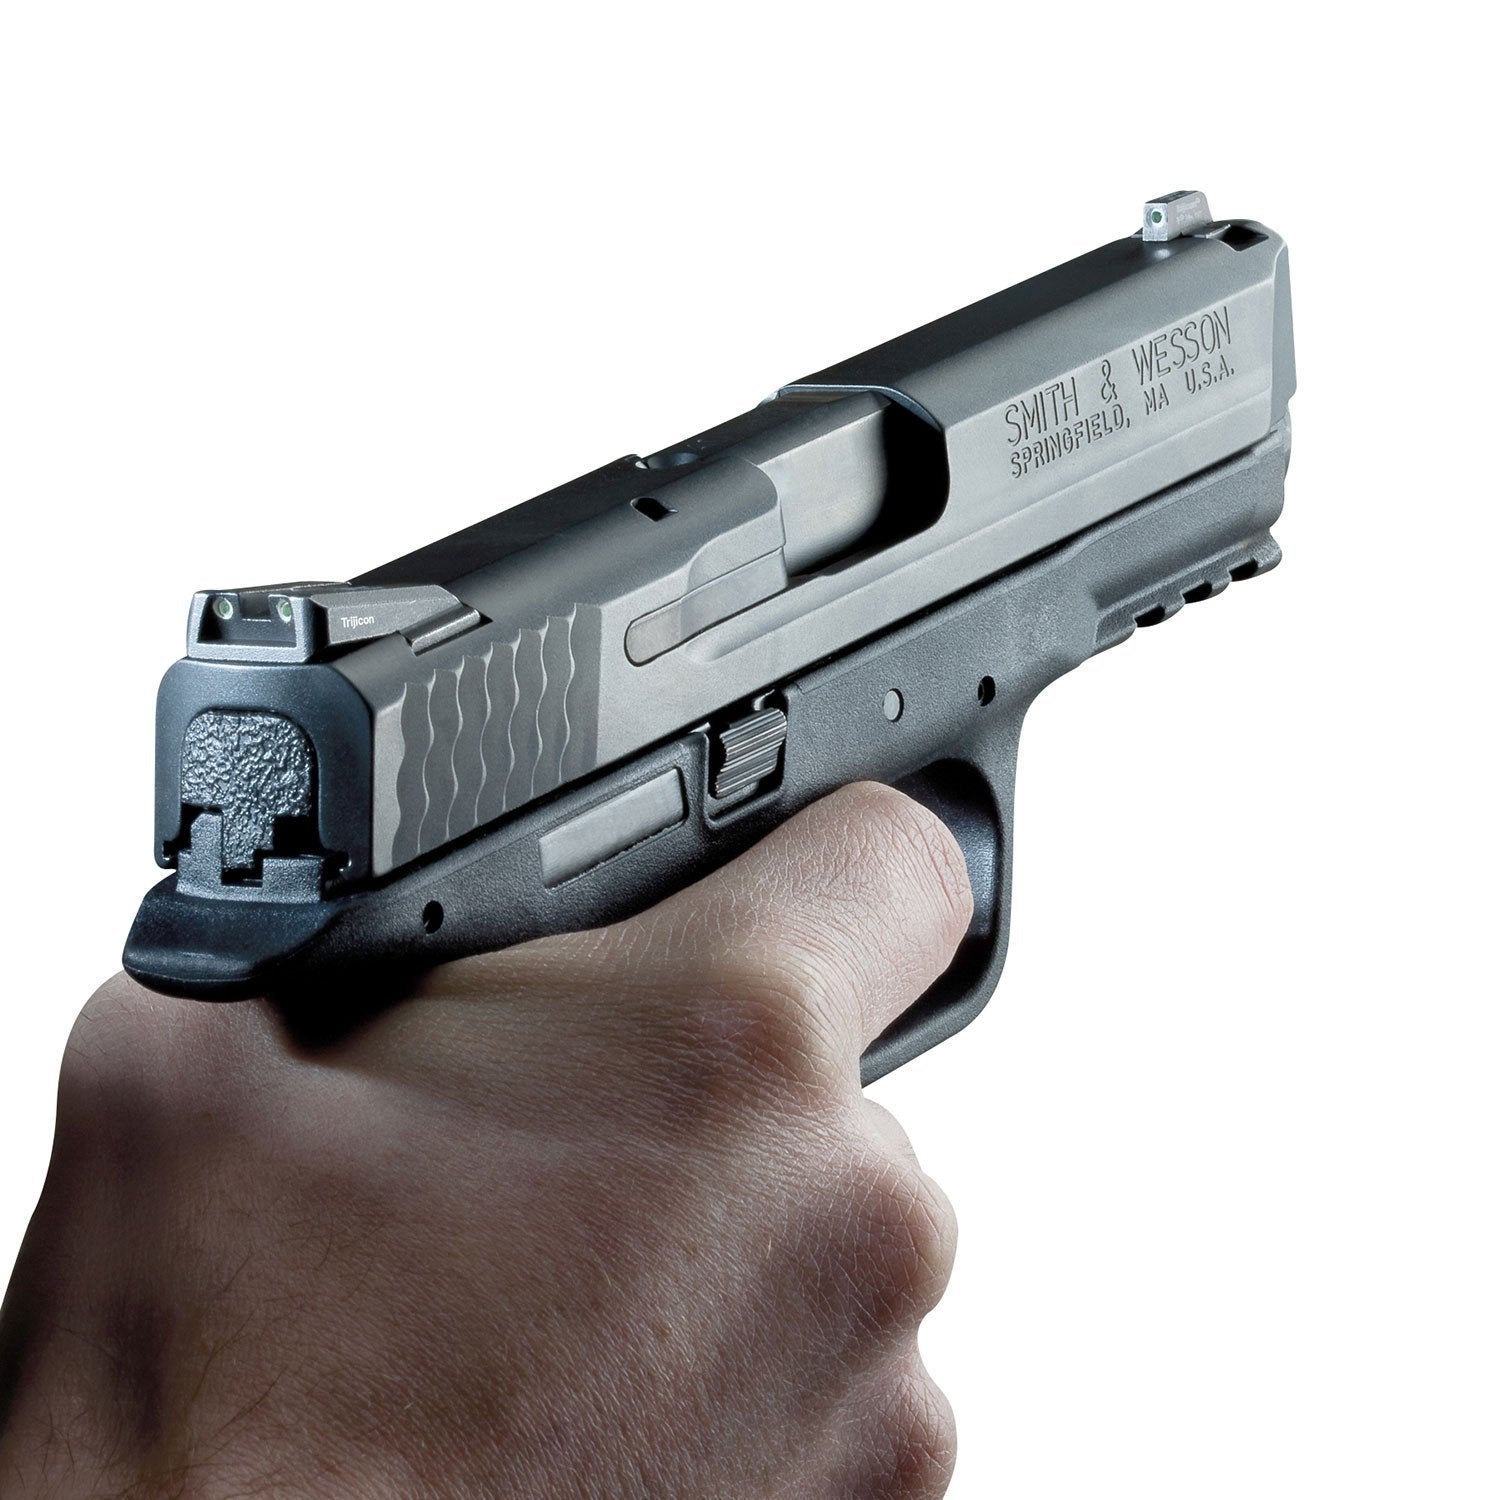 Trijicon Bright & Tough Night Sight Set for Glock Pistols Optics Trijicon Tactical Gear Supplier Tactical Distributors Australia